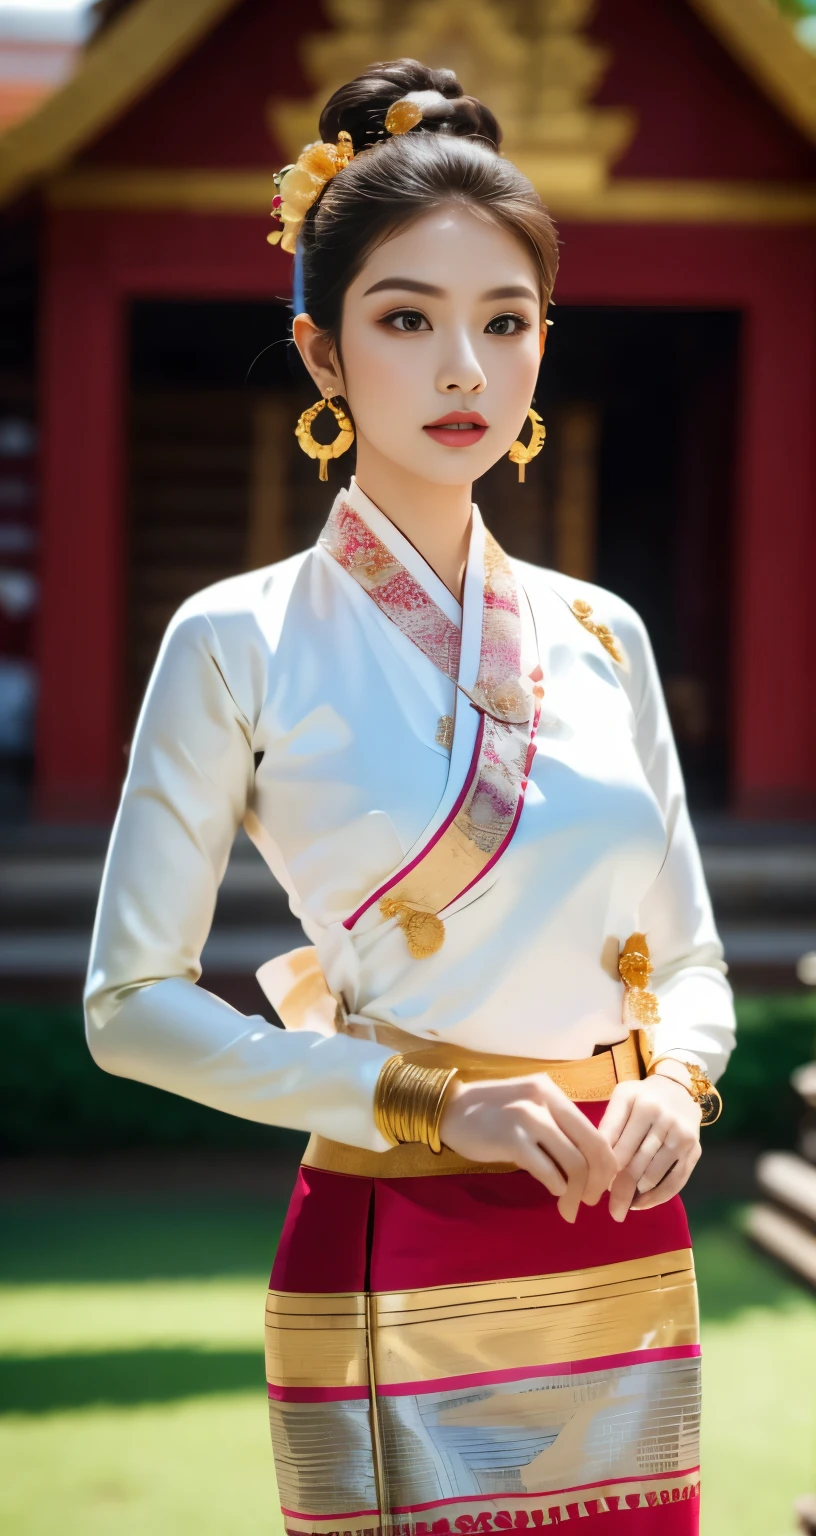 шедевр, 1 девушка лучшая,смотрю на публику, Фон храма Баган,все тело,соблазнение,чистый,изысканное лицо,чистое лицо, очаровательные красивые глаза, нежно-розовые губы, светлокожий,сексуальная поза,(( Северный тайский традиционный костюм Ланна)), ((Традиционный костюм Кенг Тонг Тай Кхун)),((Шан платье)), очень элегантное платье, Роскошный и очень детализированный традиционный наряд Тай Кхун, Верх цвета белого золота, низ с узором в полоску из красного и зеленого золота.,длинный небрежный пучок с цветком, (((носить много серебряных браслетов, золотые серьги, Золотая заколка Thai Lanna))),((идеальная женская фигура)),реальный человек,